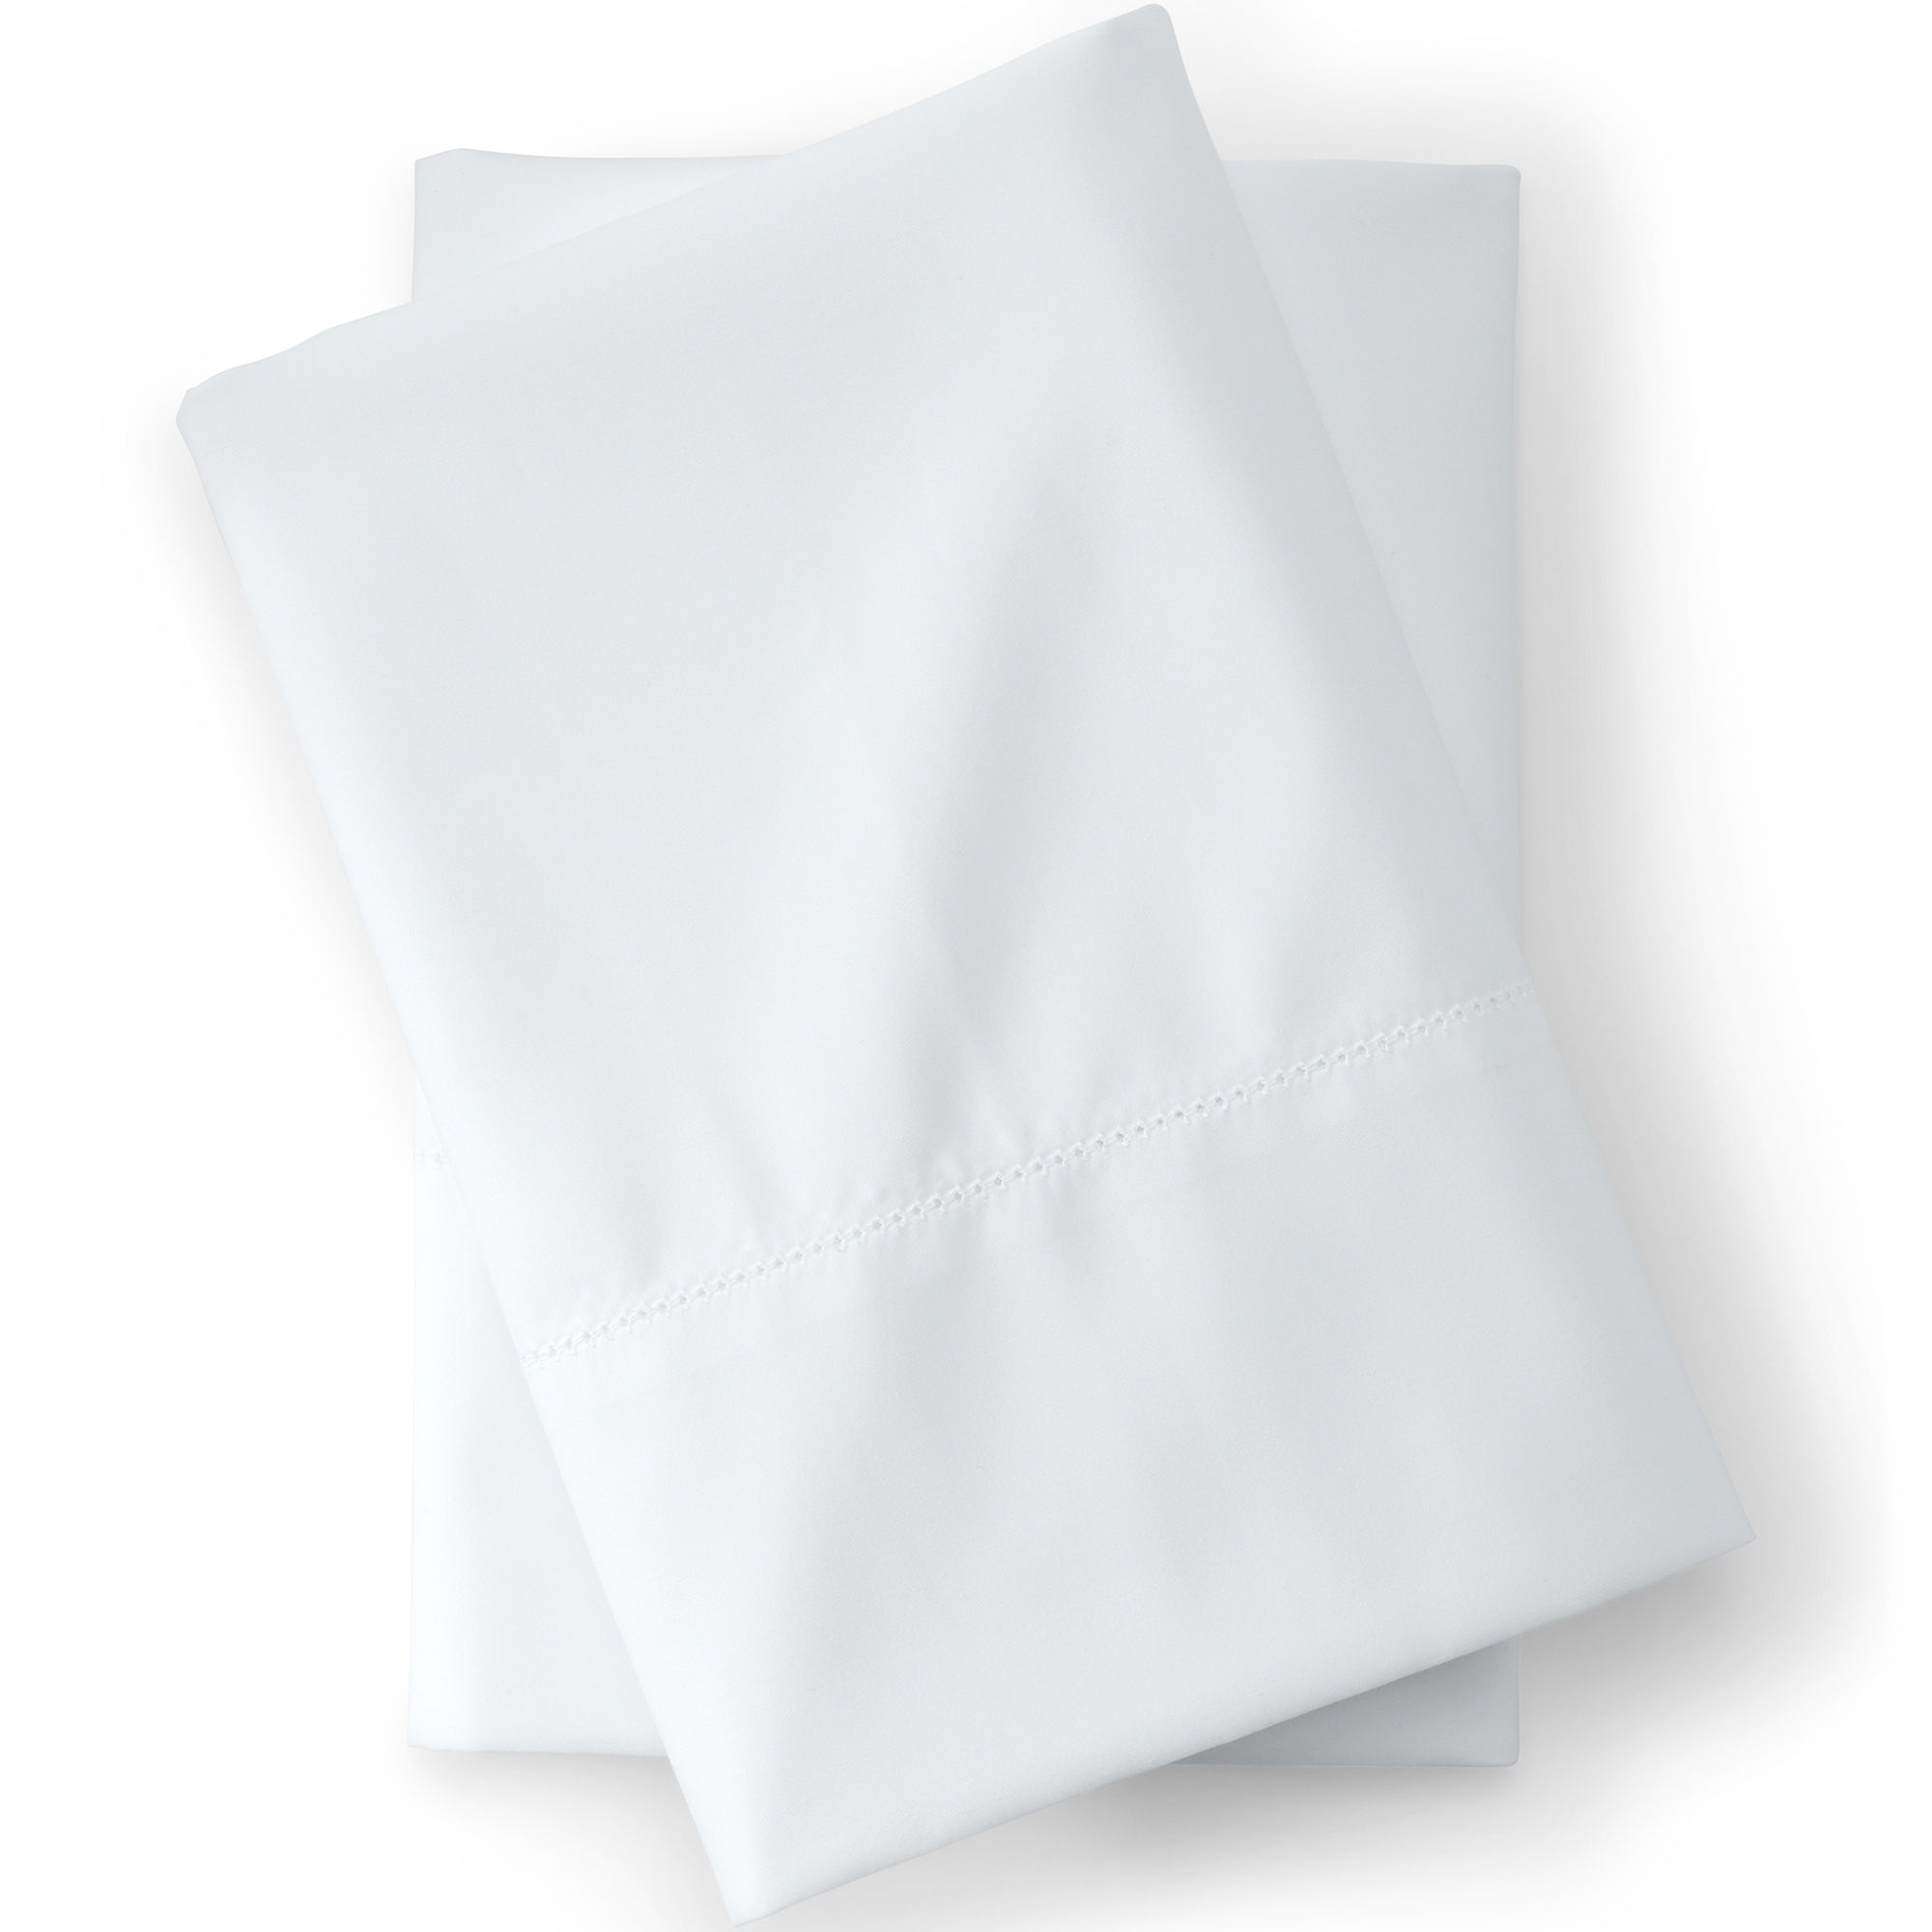 White Pillowcases 21x32 - Dozen